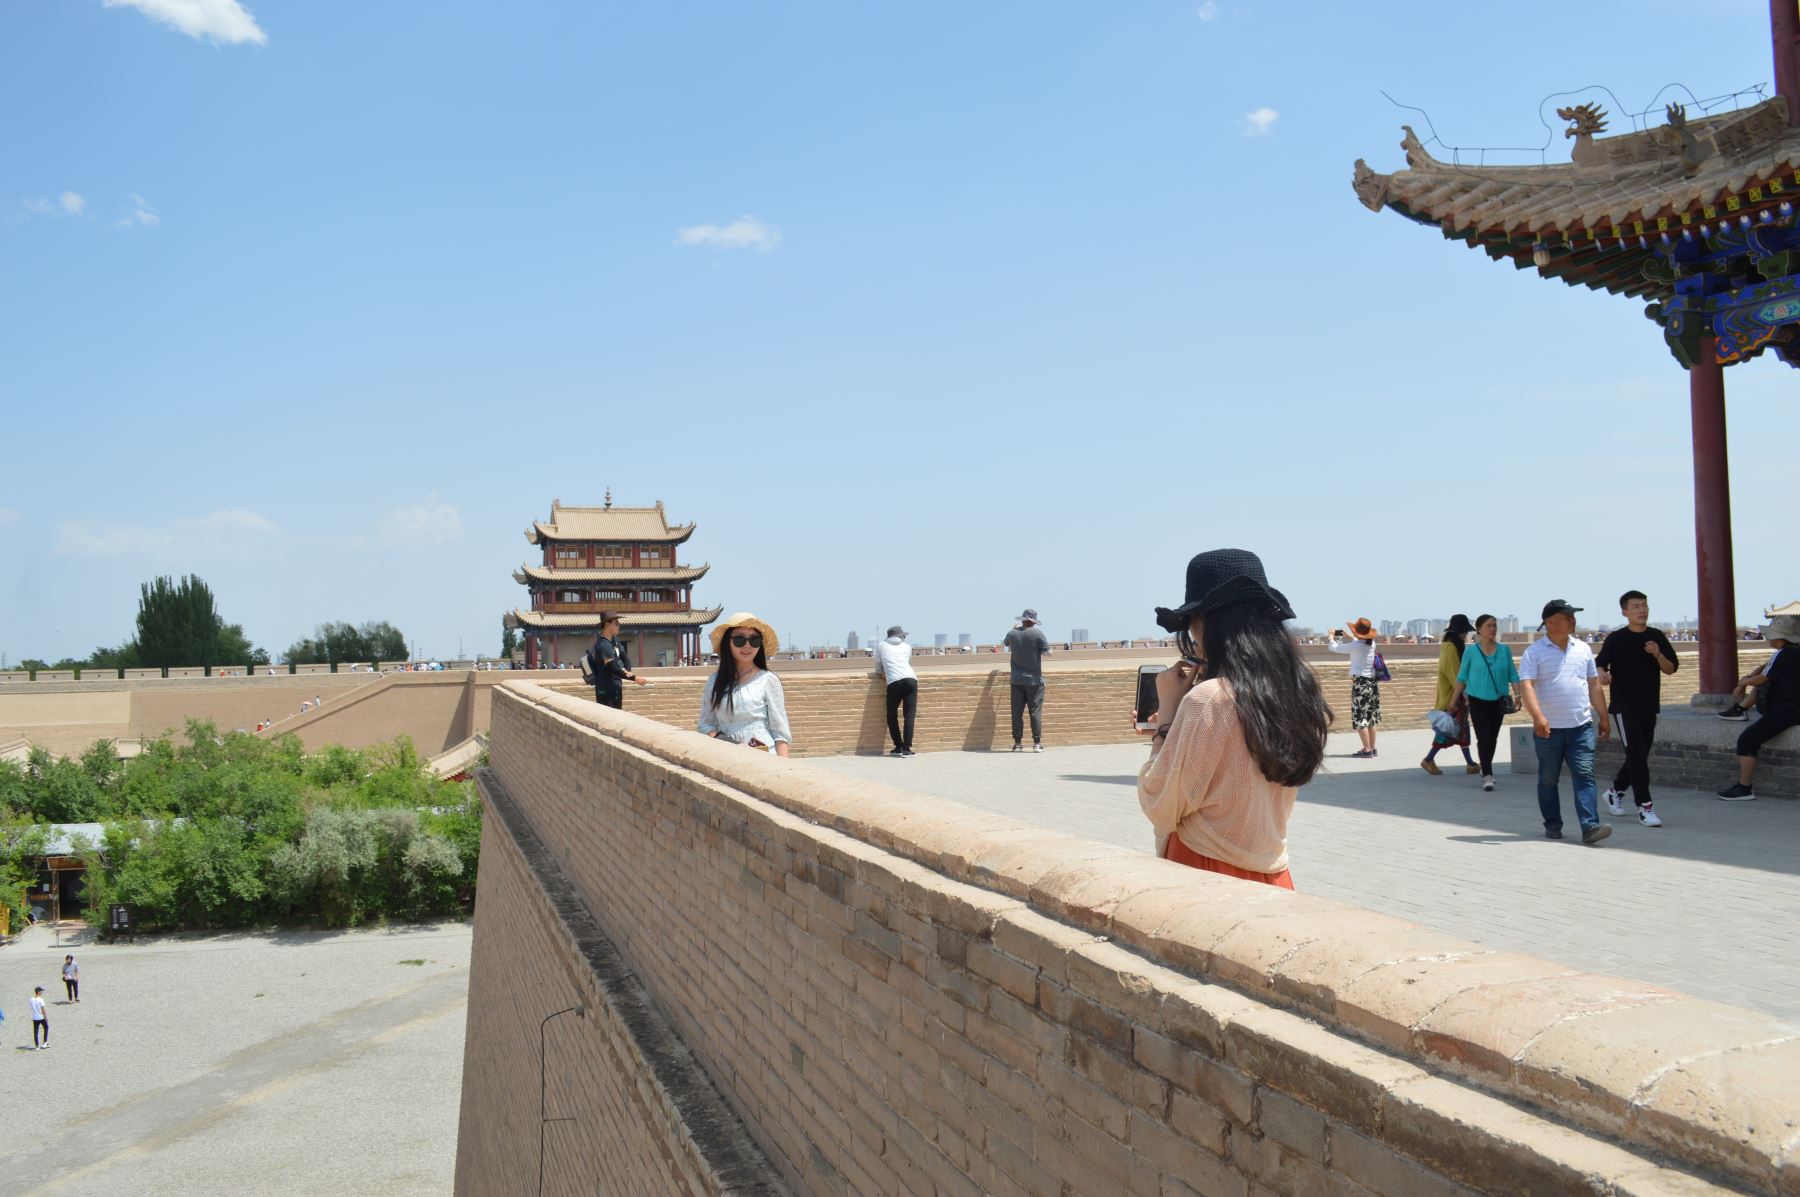 Turistas acuden diariamente al Paso de Jiayuguan, donde inicia la Gran Muralla de China. Foto: ANDINA / Víctor Véliz.